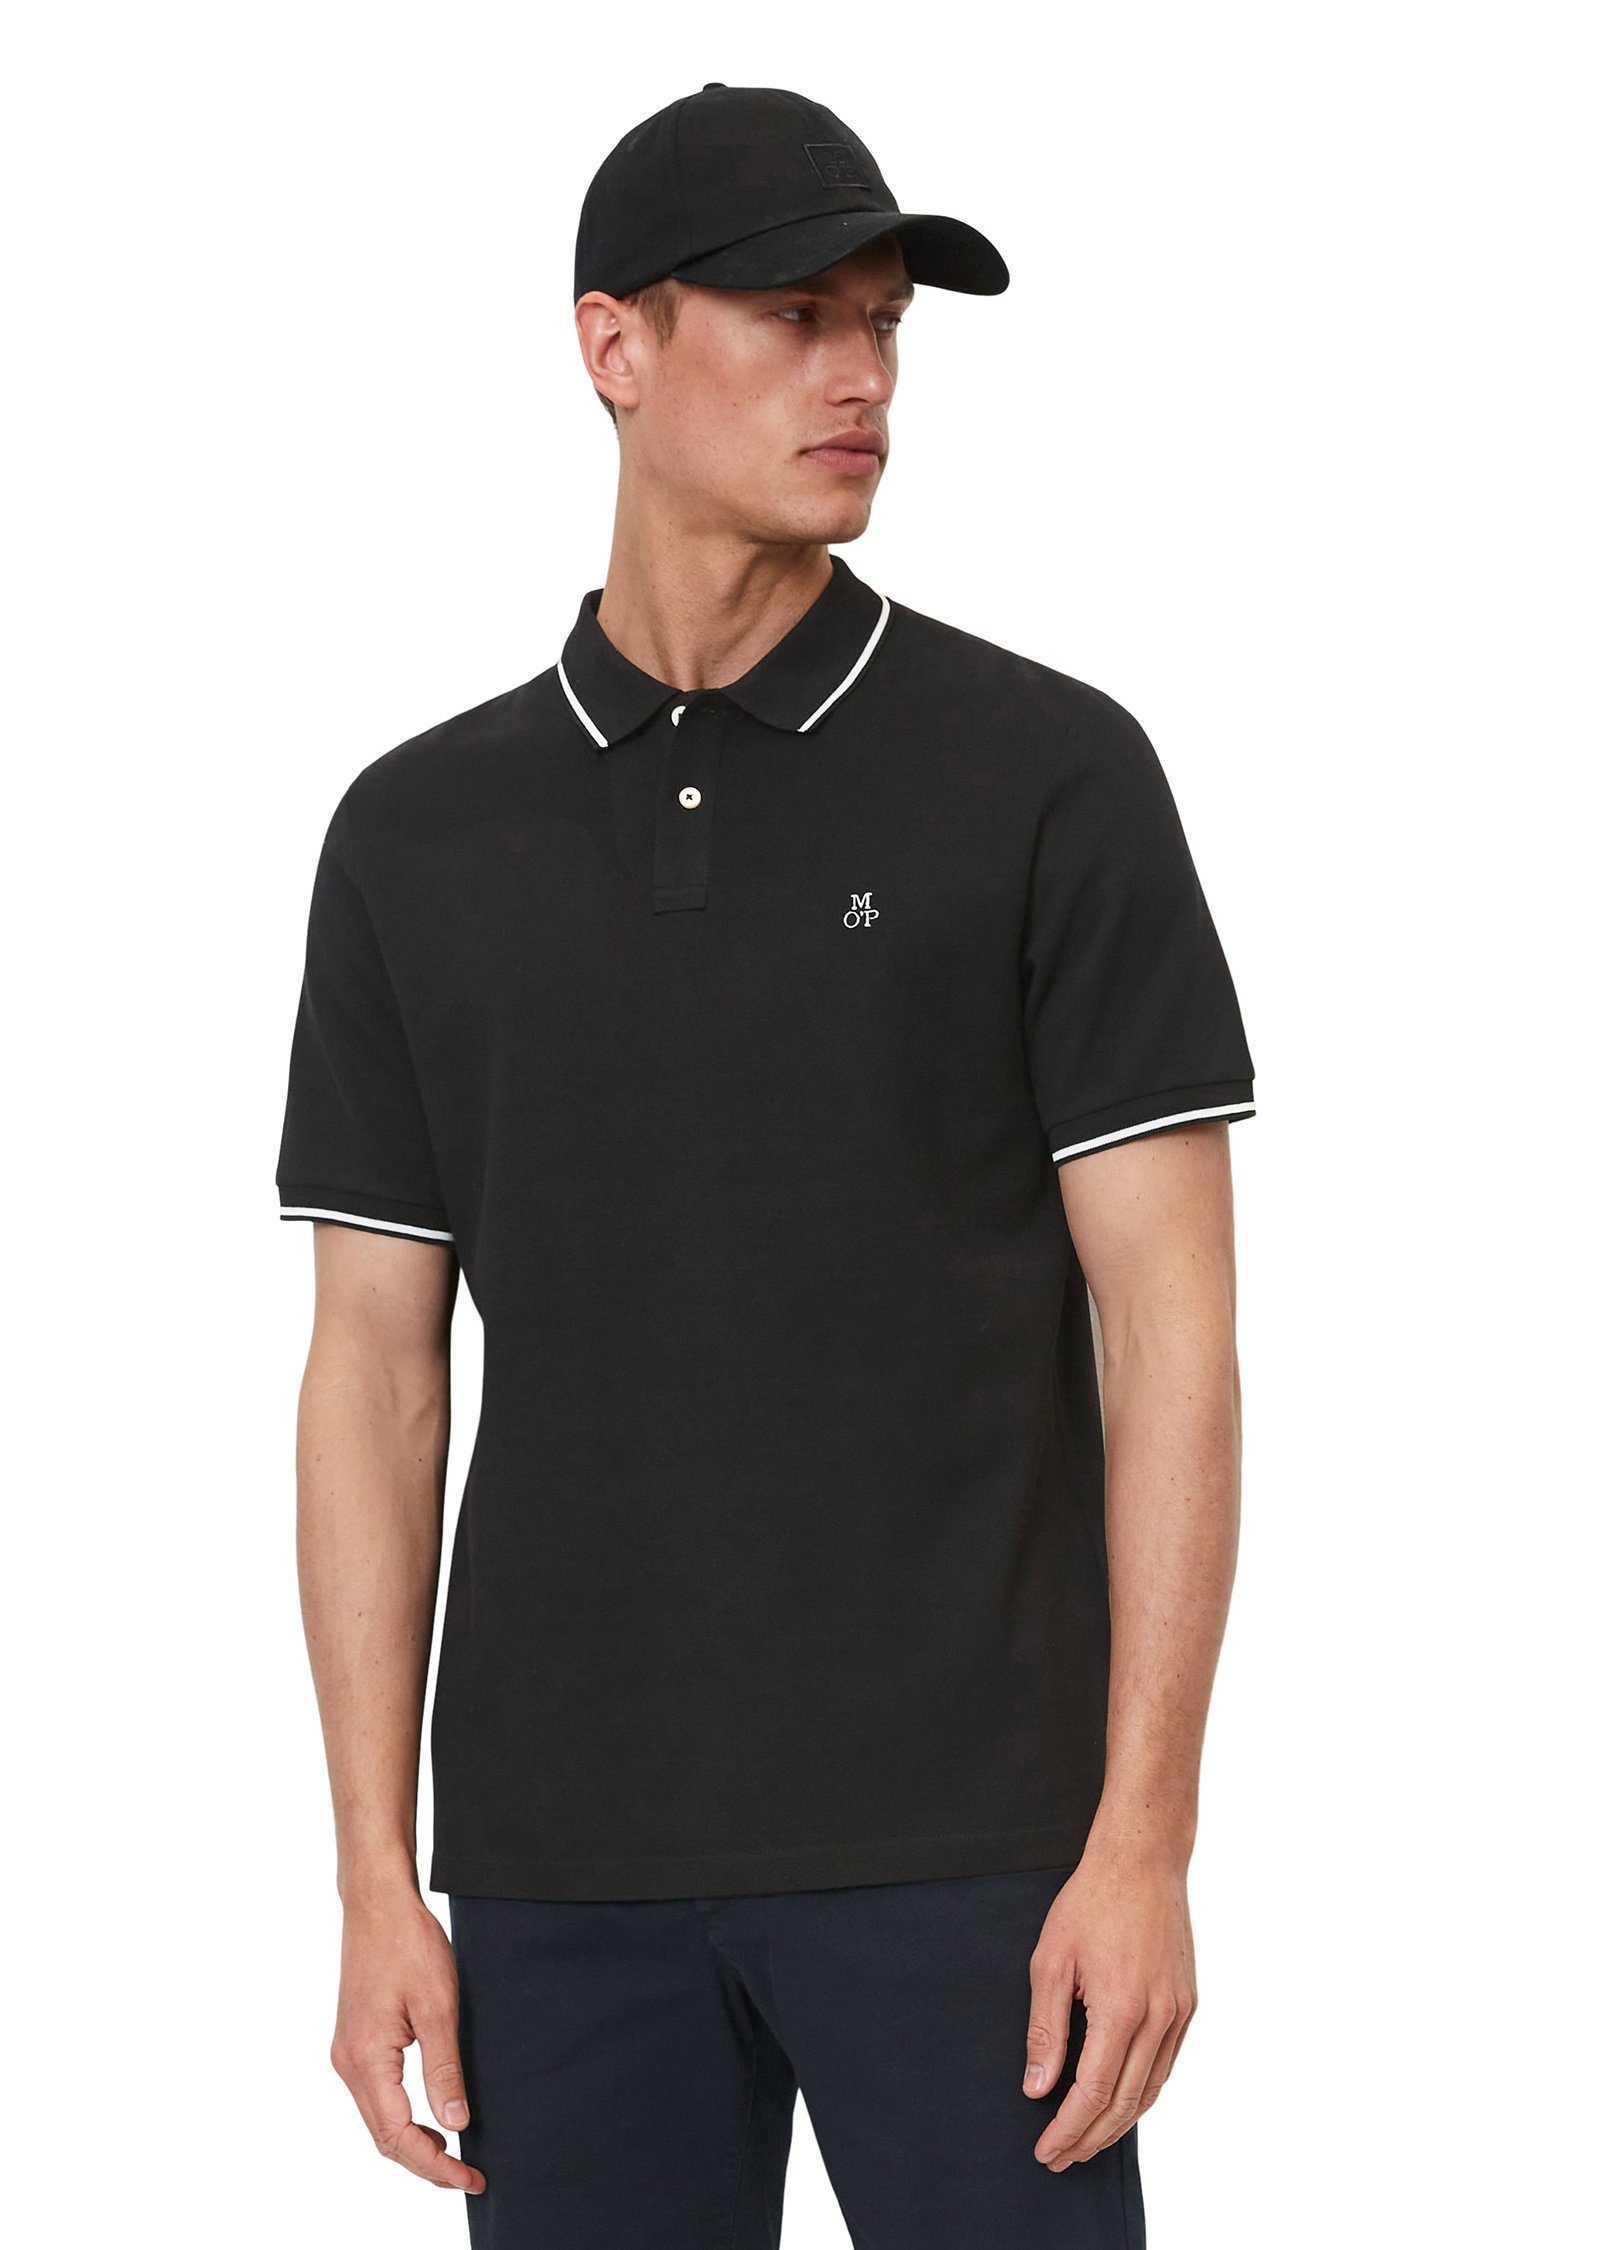 Marc O'Polo Poloshirt aus Organic Cotton schwarz | Poloshirts